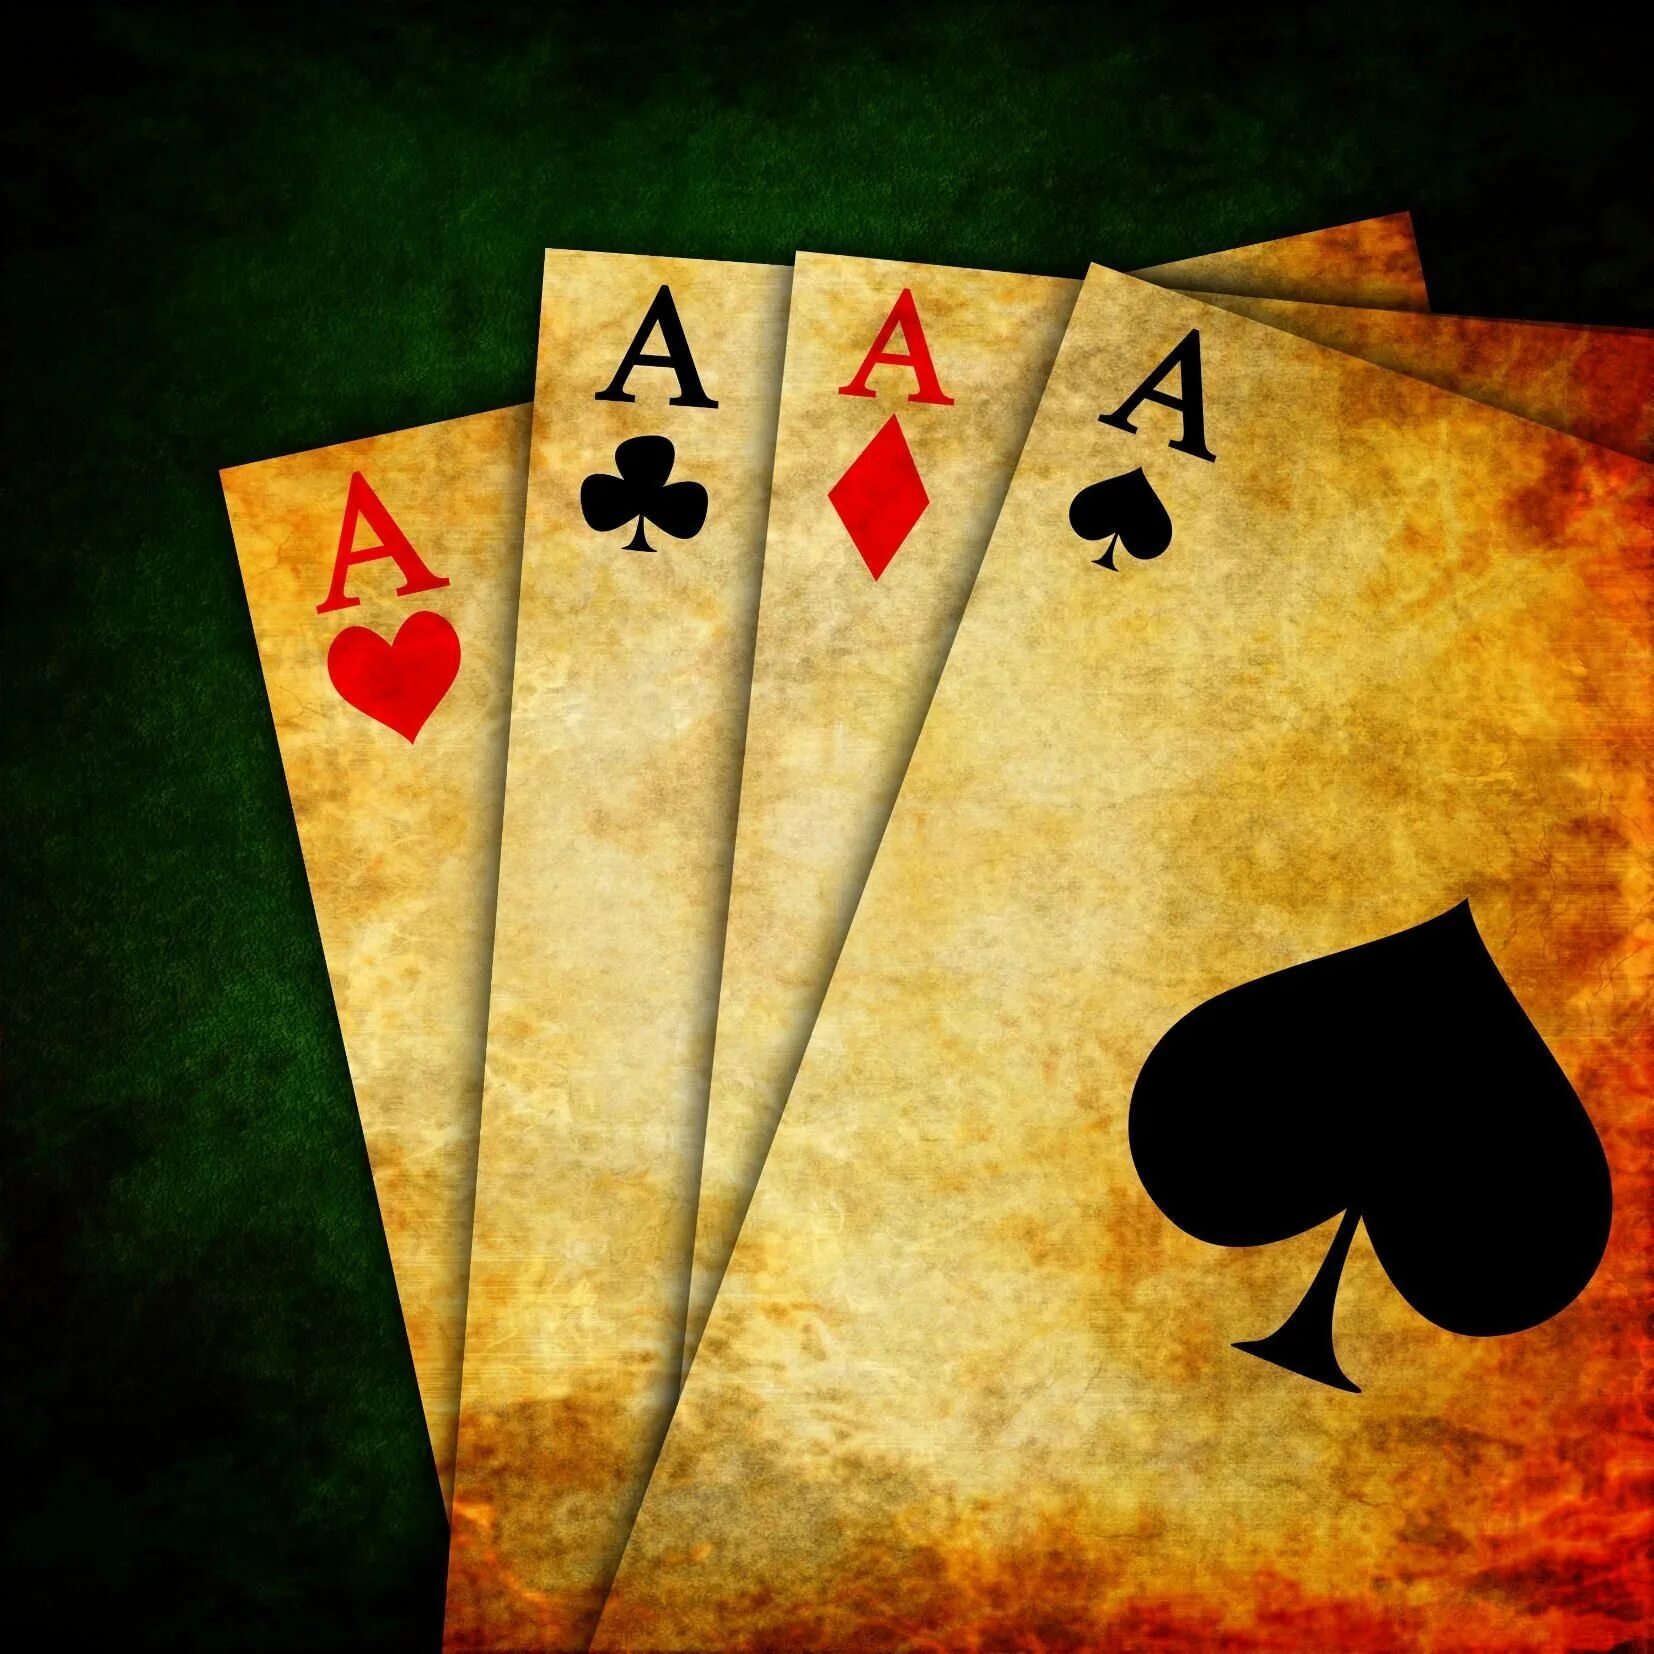 Cards images. Игральные карты туз Покер. Четыре туза. Карты игровые. Фон карты игральные.